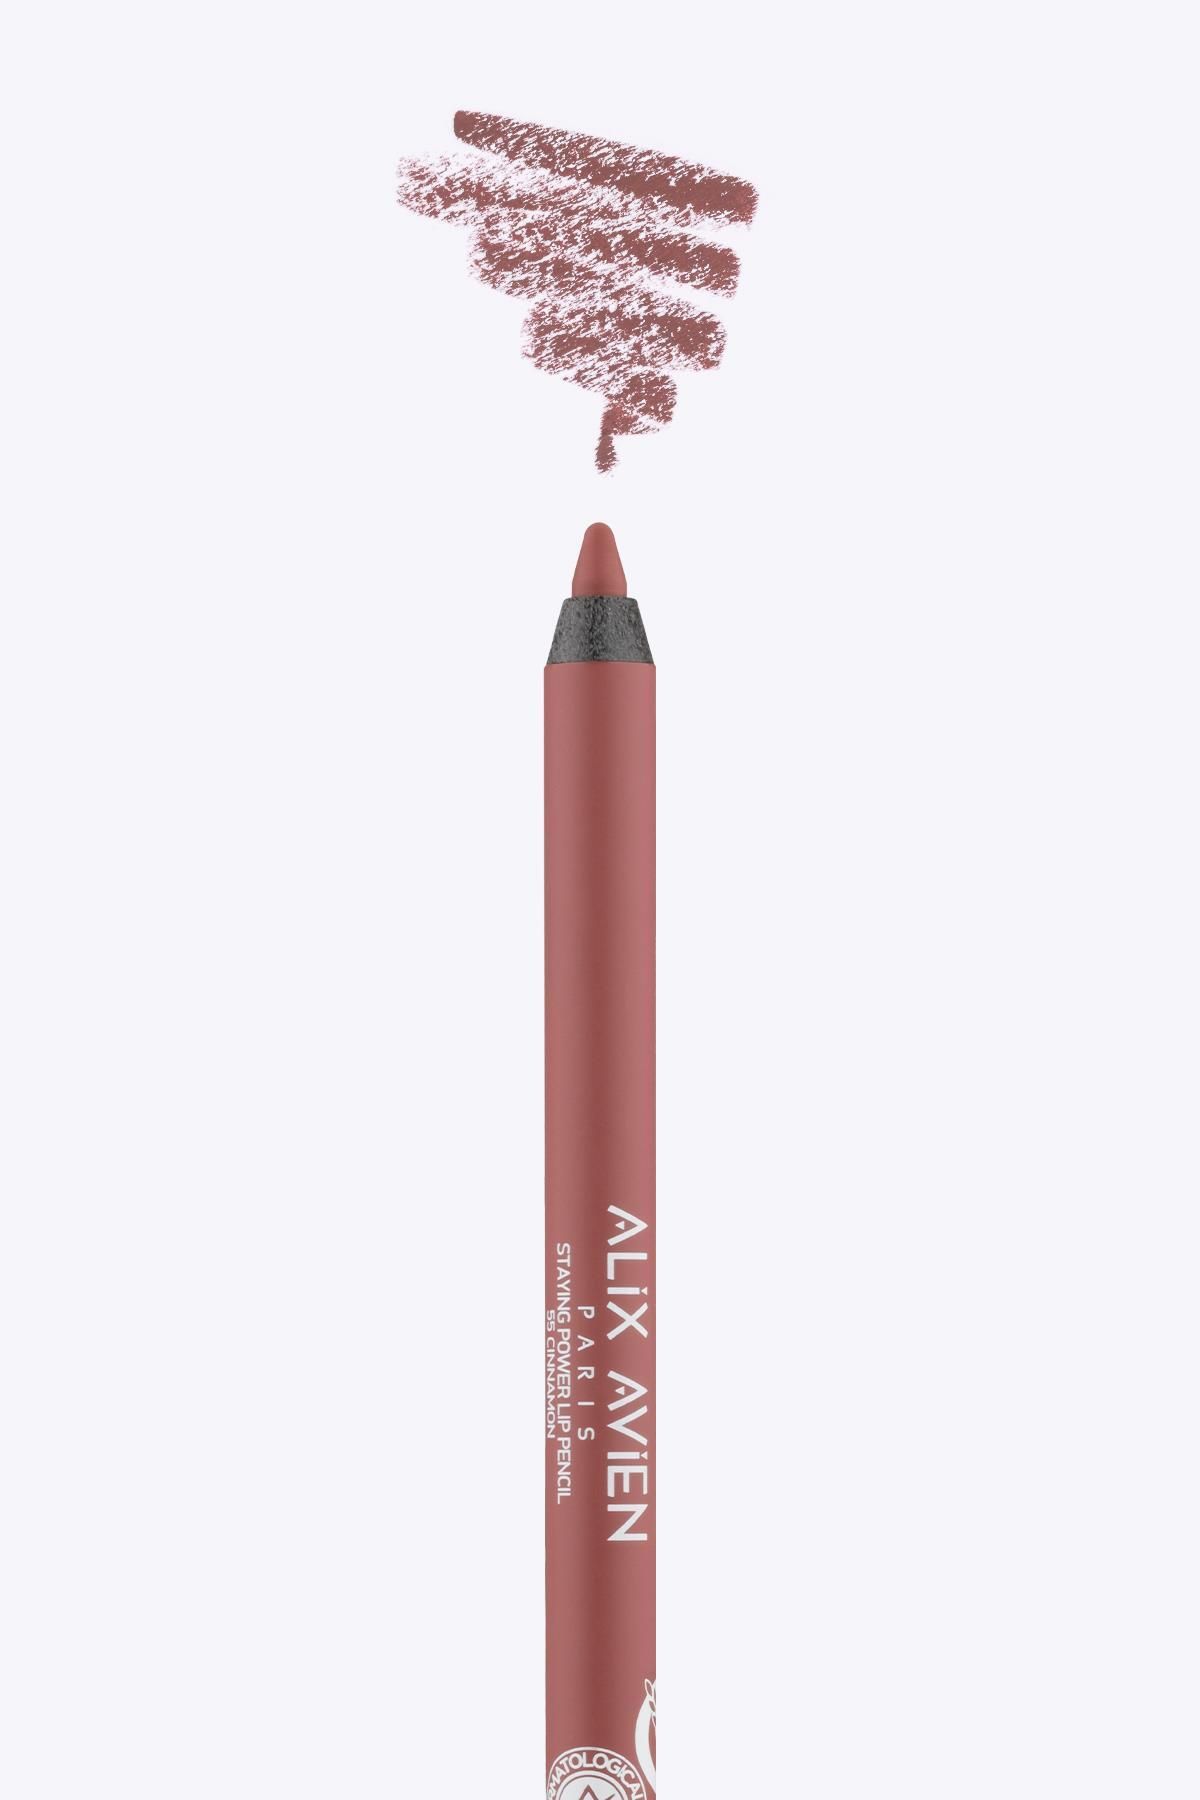 Alix Avien Uzun Süre Kalıcı Suya Dayanıklı Dudak Kalemi - Staying Power Lip Pencil 55 Cinnamon